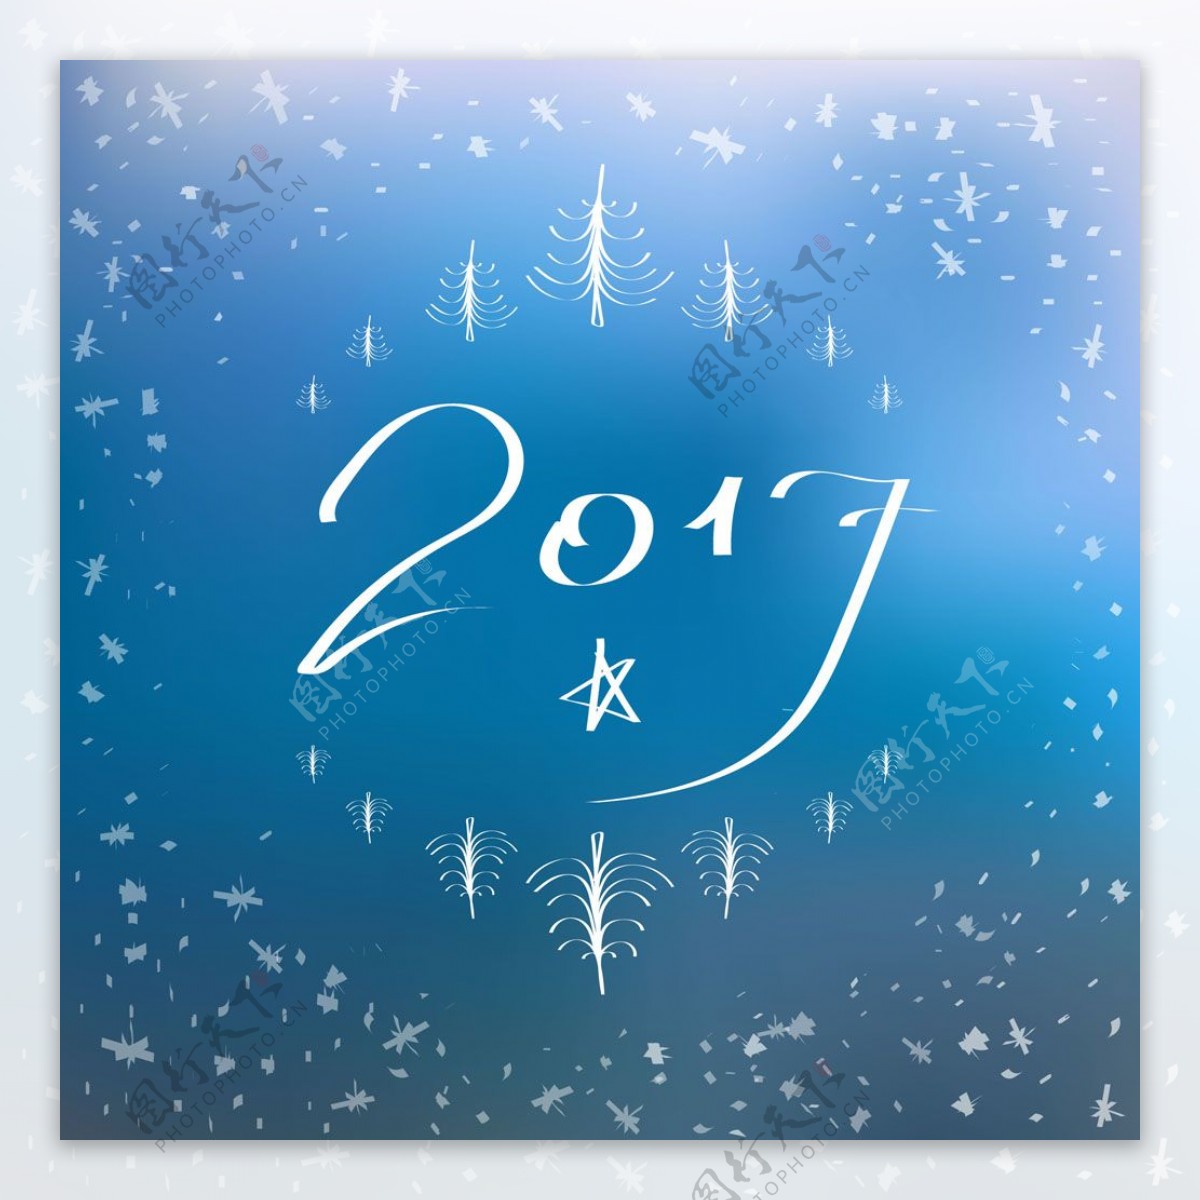 线条圣诞树2017背景图片